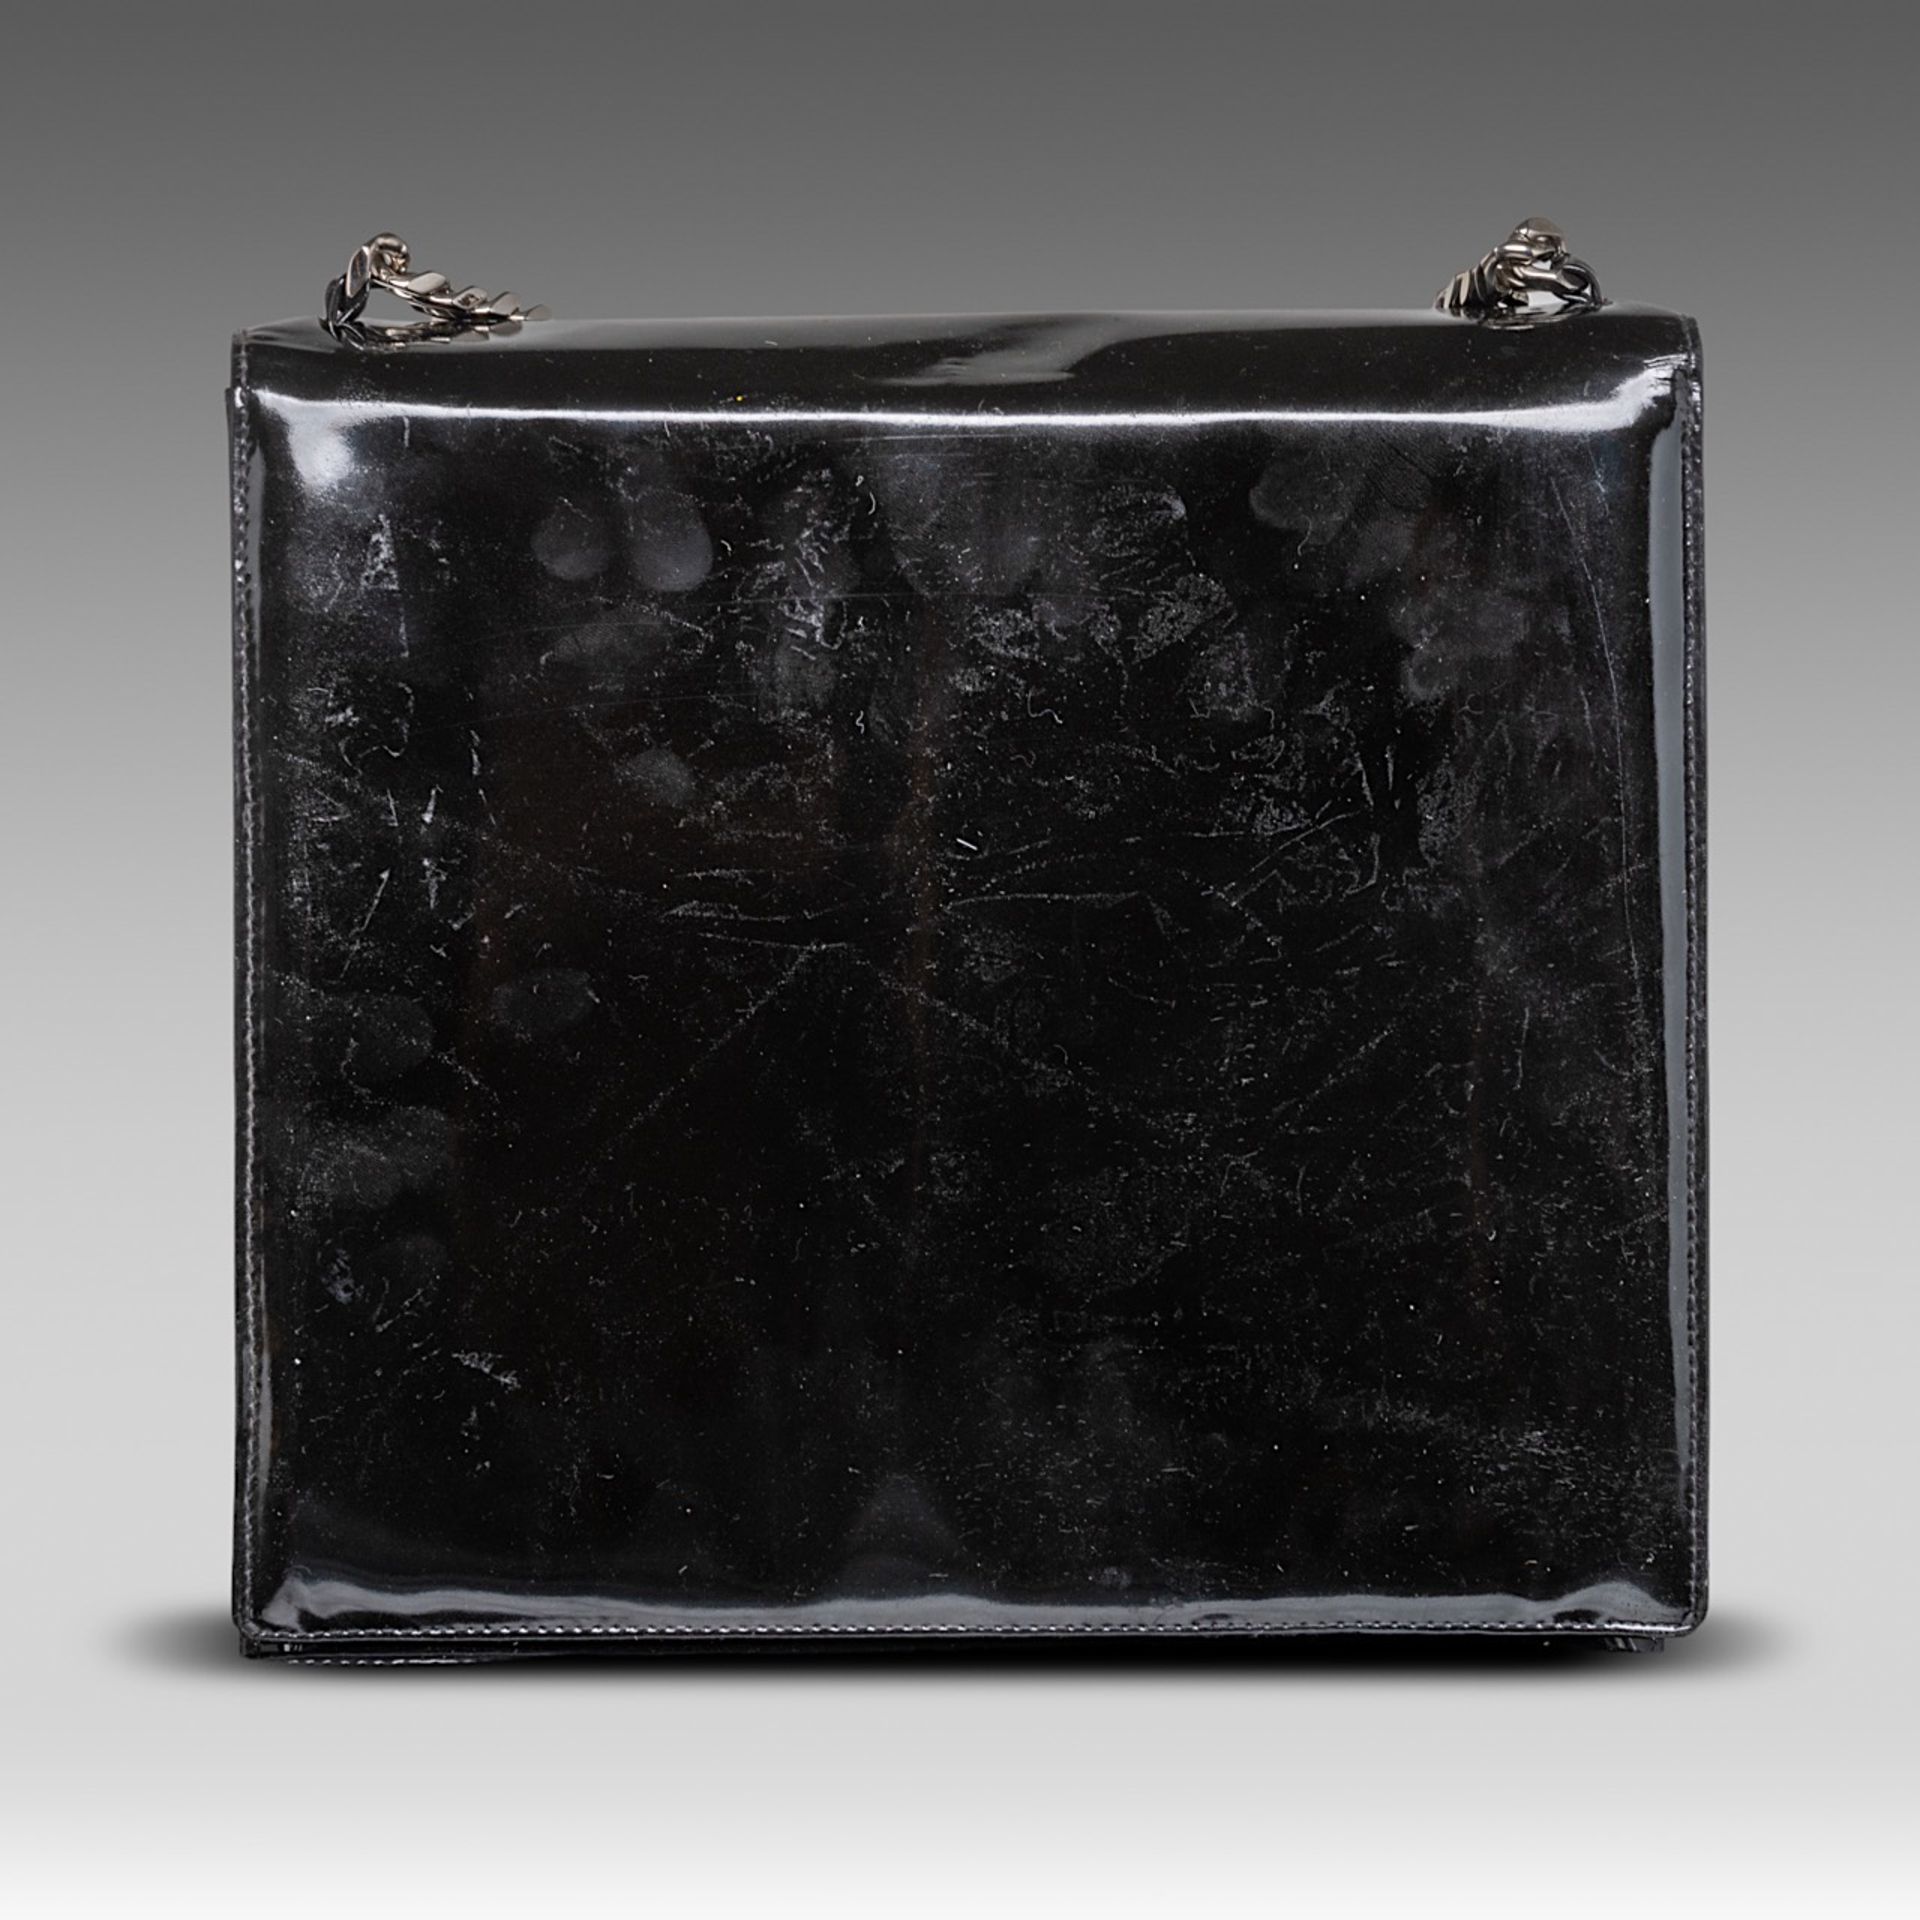 A Chanel flap handbag in black patent leather, H 22 - W 25 - D 8 cm - Bild 4 aus 10